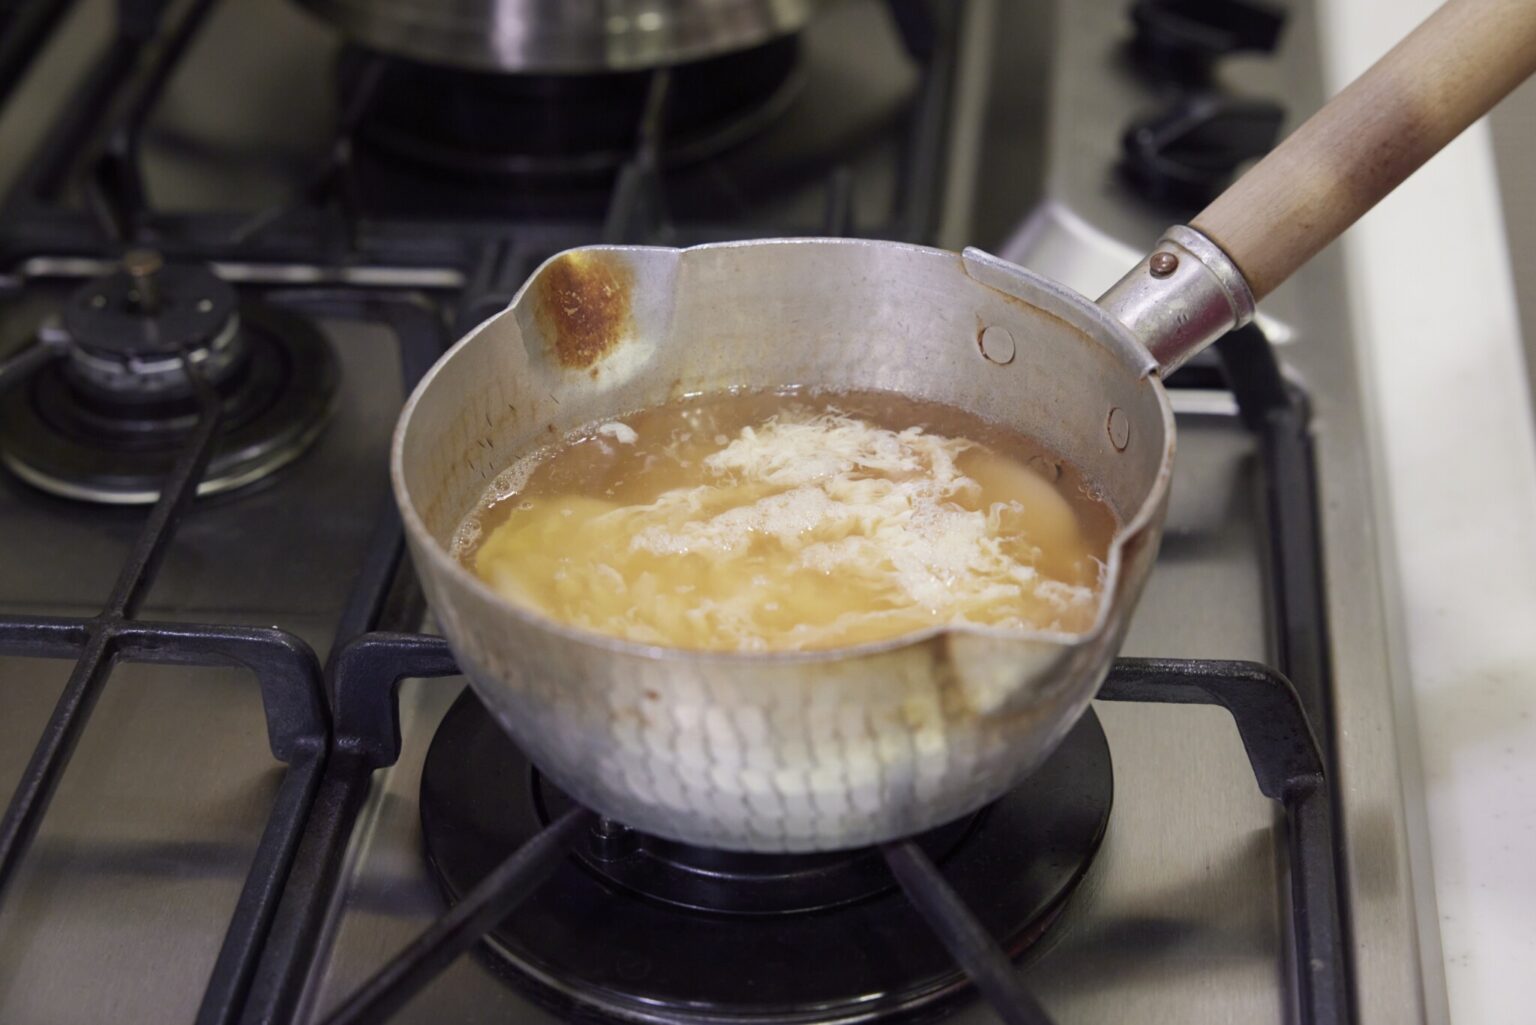 POINT：卵液を鍋に流し入れたら決してさわらないこと。箸などで混ぜるとだしが濁ってしまう。